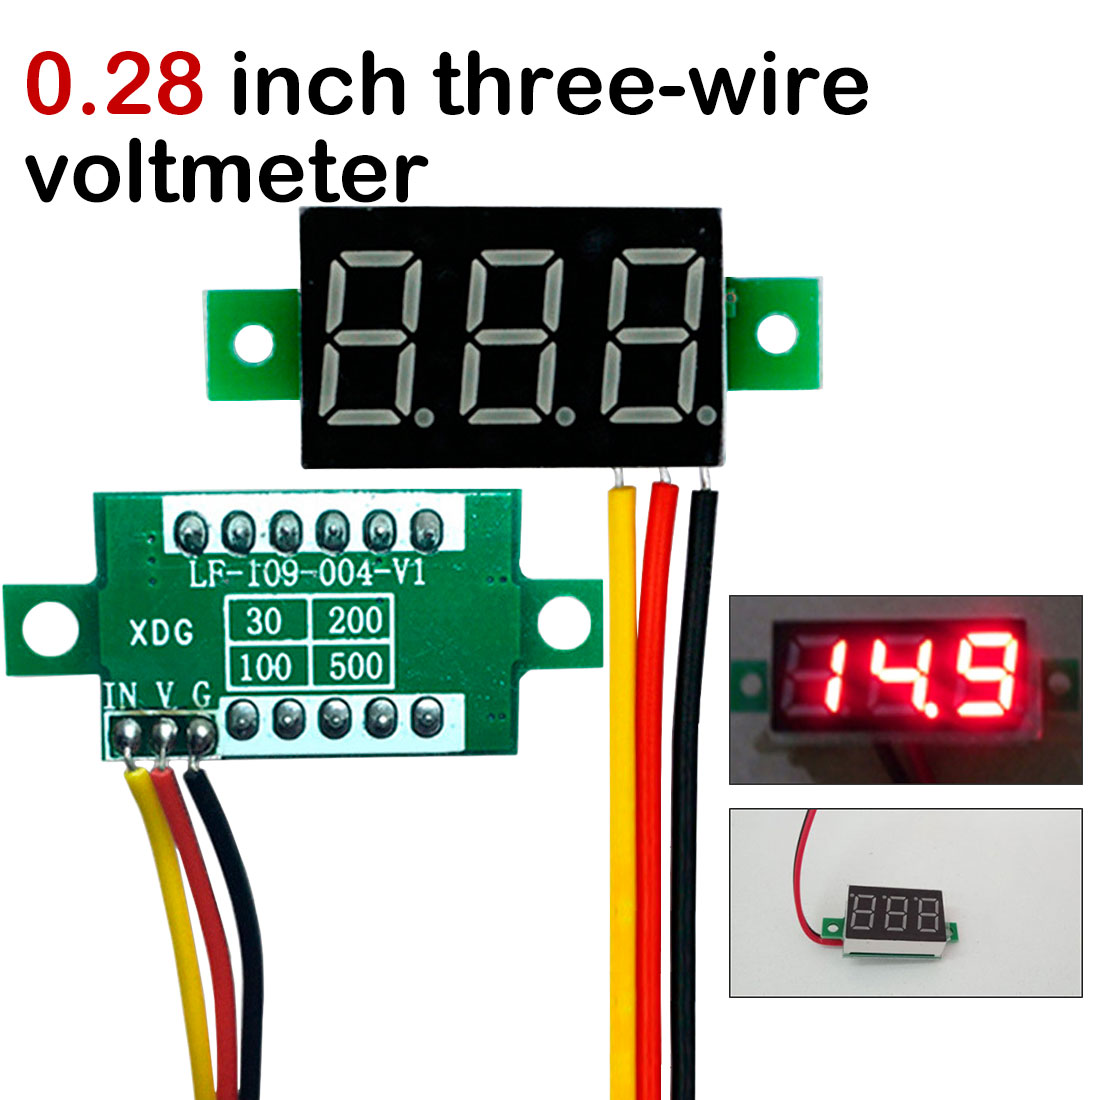 DC 0-100V Wires LED 3-Digital Mini Voltmeter Meter Display Voltage Panel Test*MB 